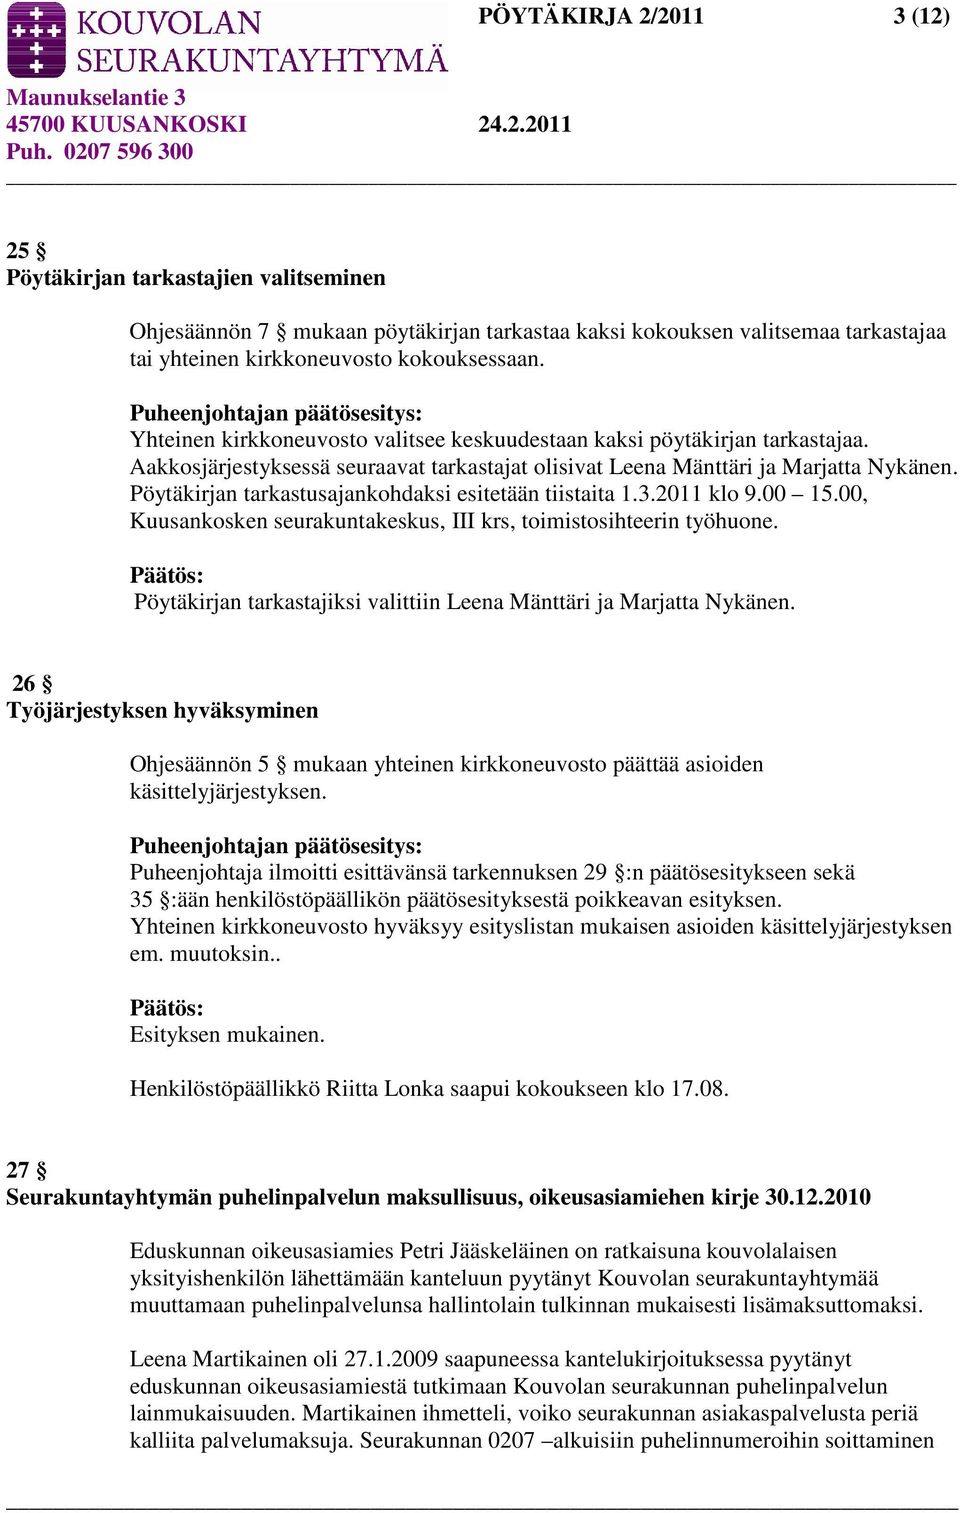 Pöytäkirjan tarkastusajankohdaksi esitetään tiistaita 1.3.2011 klo 9.00 15.00, Kuusankosken seurakuntakeskus, III krs, toimistosihteerin työhuone.